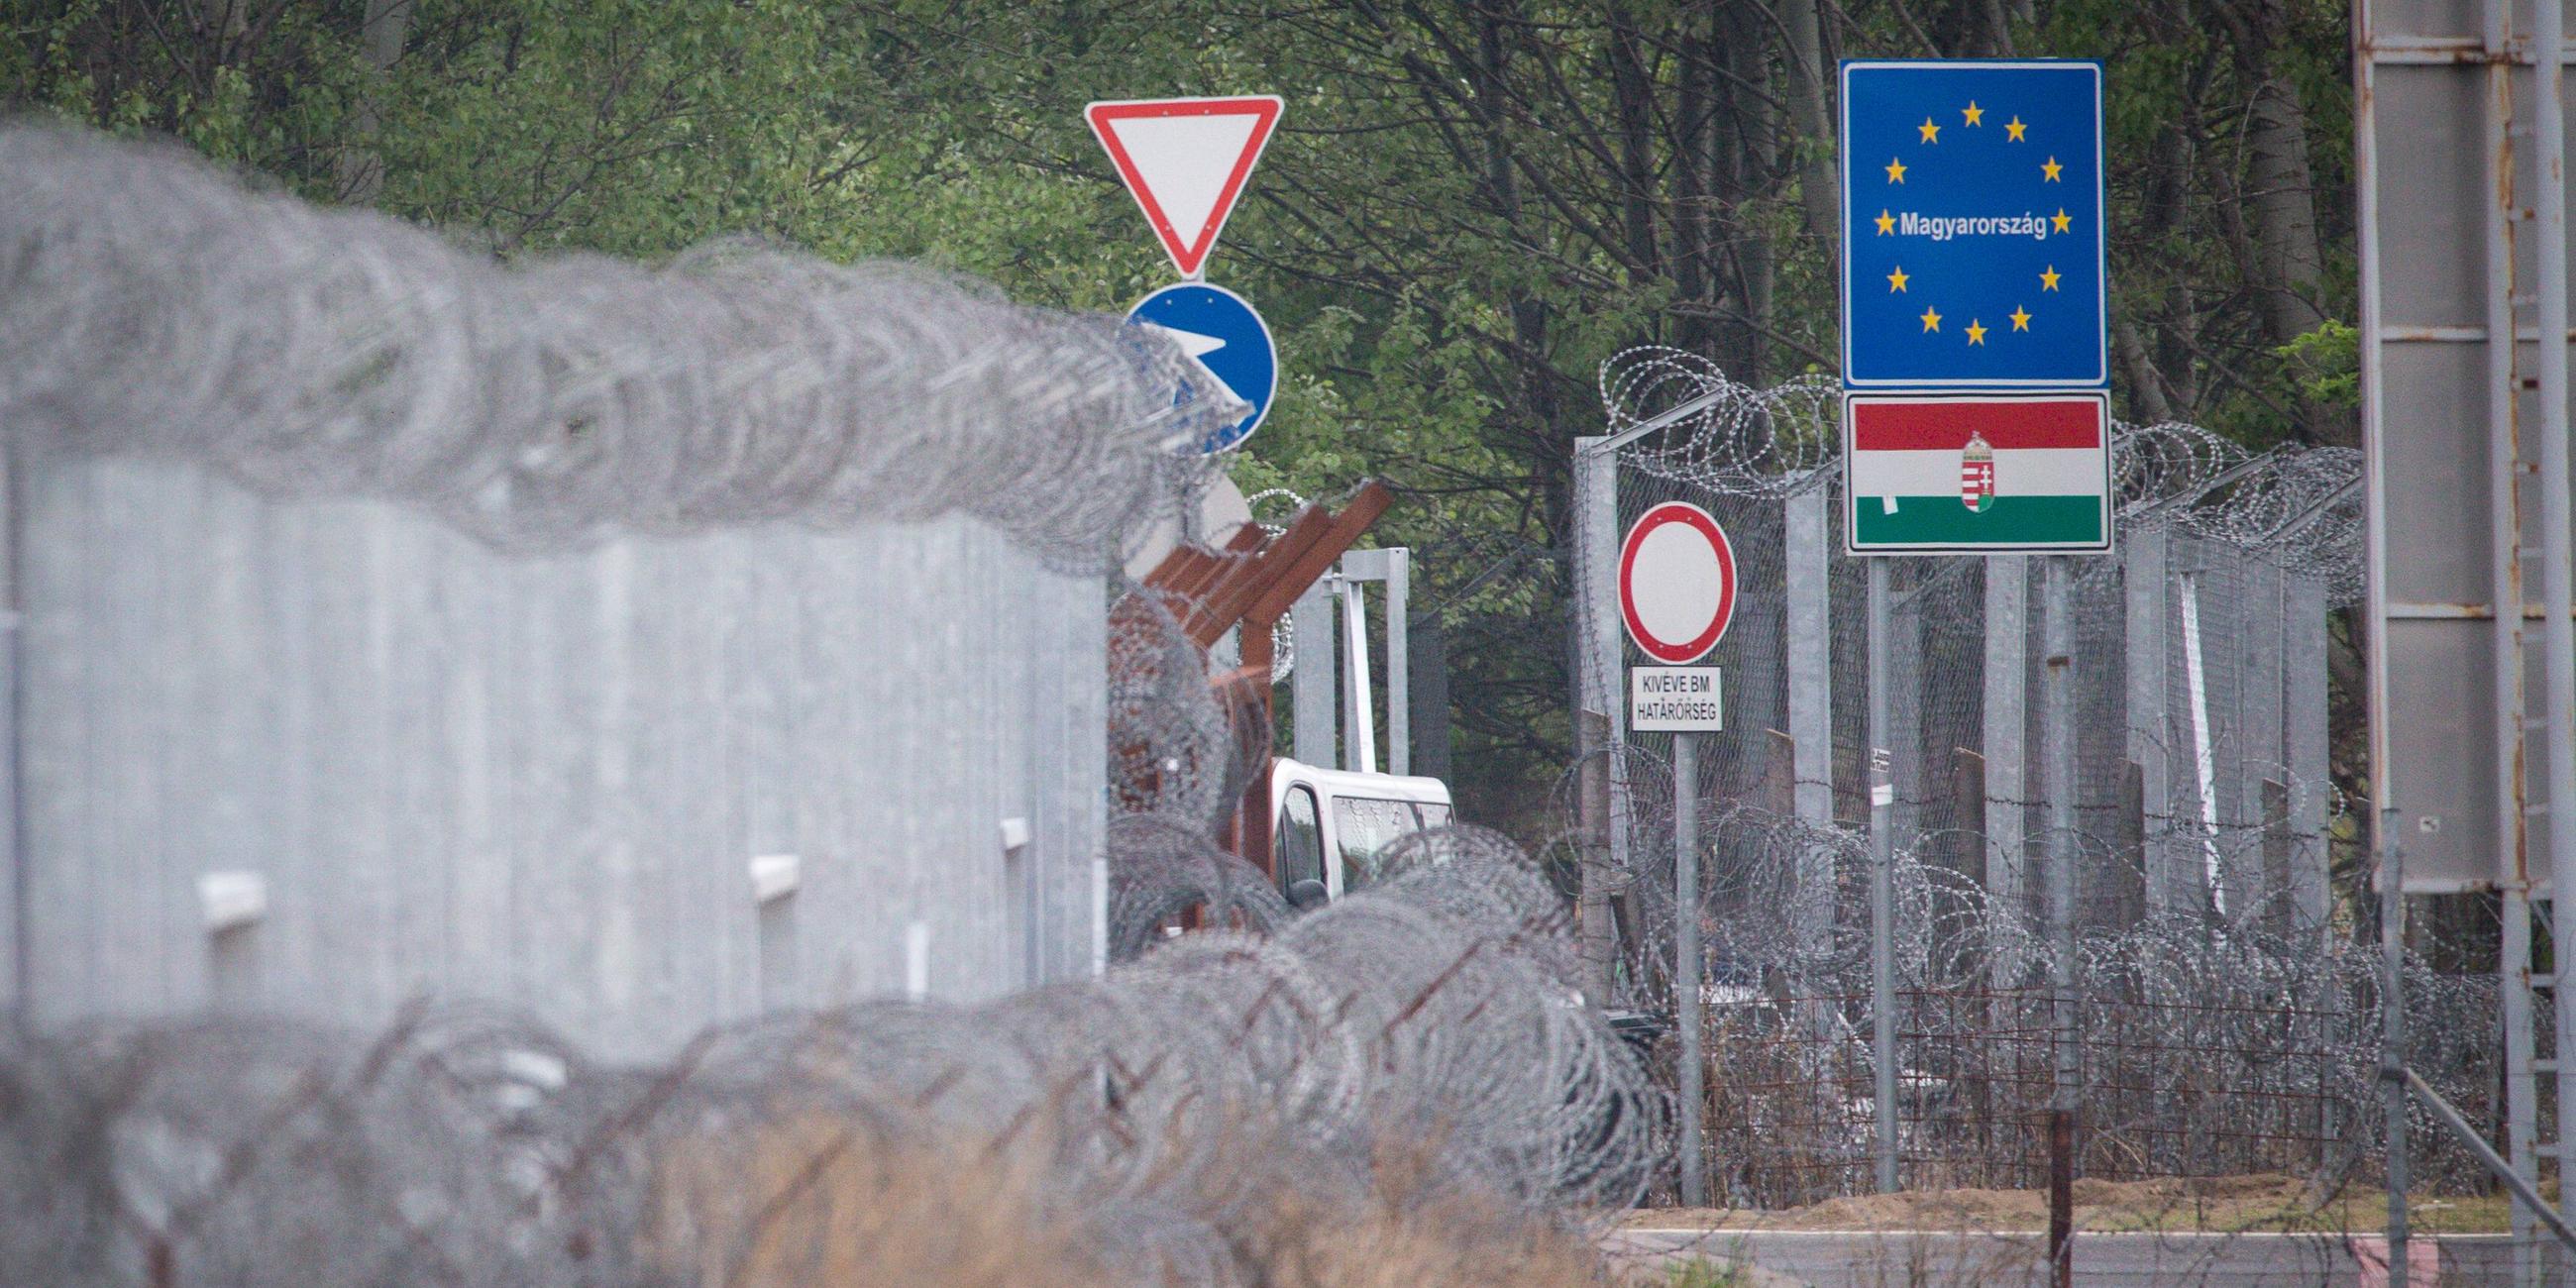 Serbisch - Ungarische Grenze